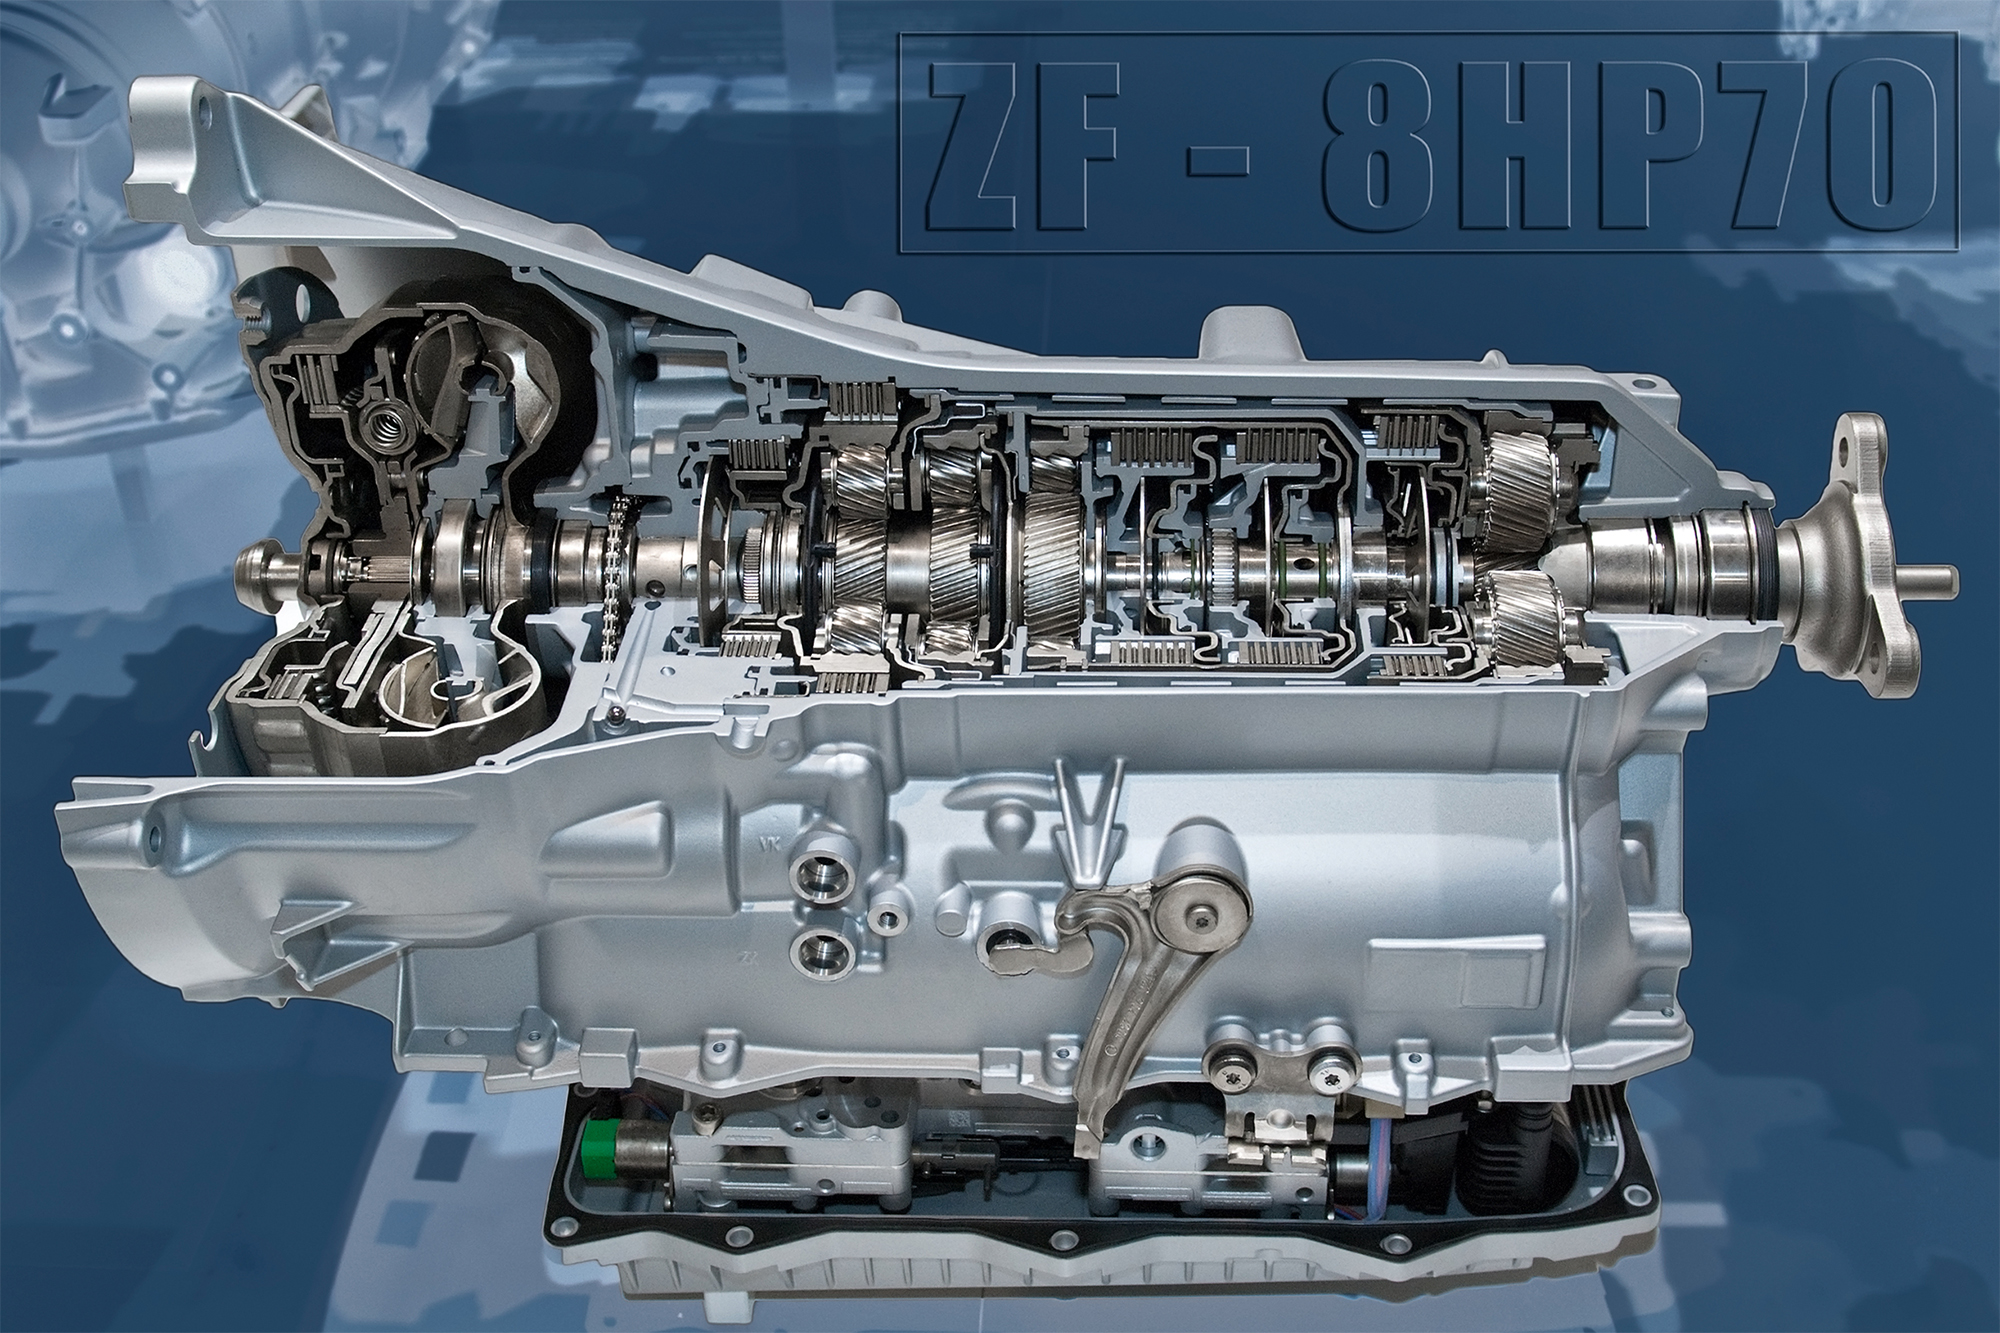 ZF Stufenautomatgetriebe 8HP70